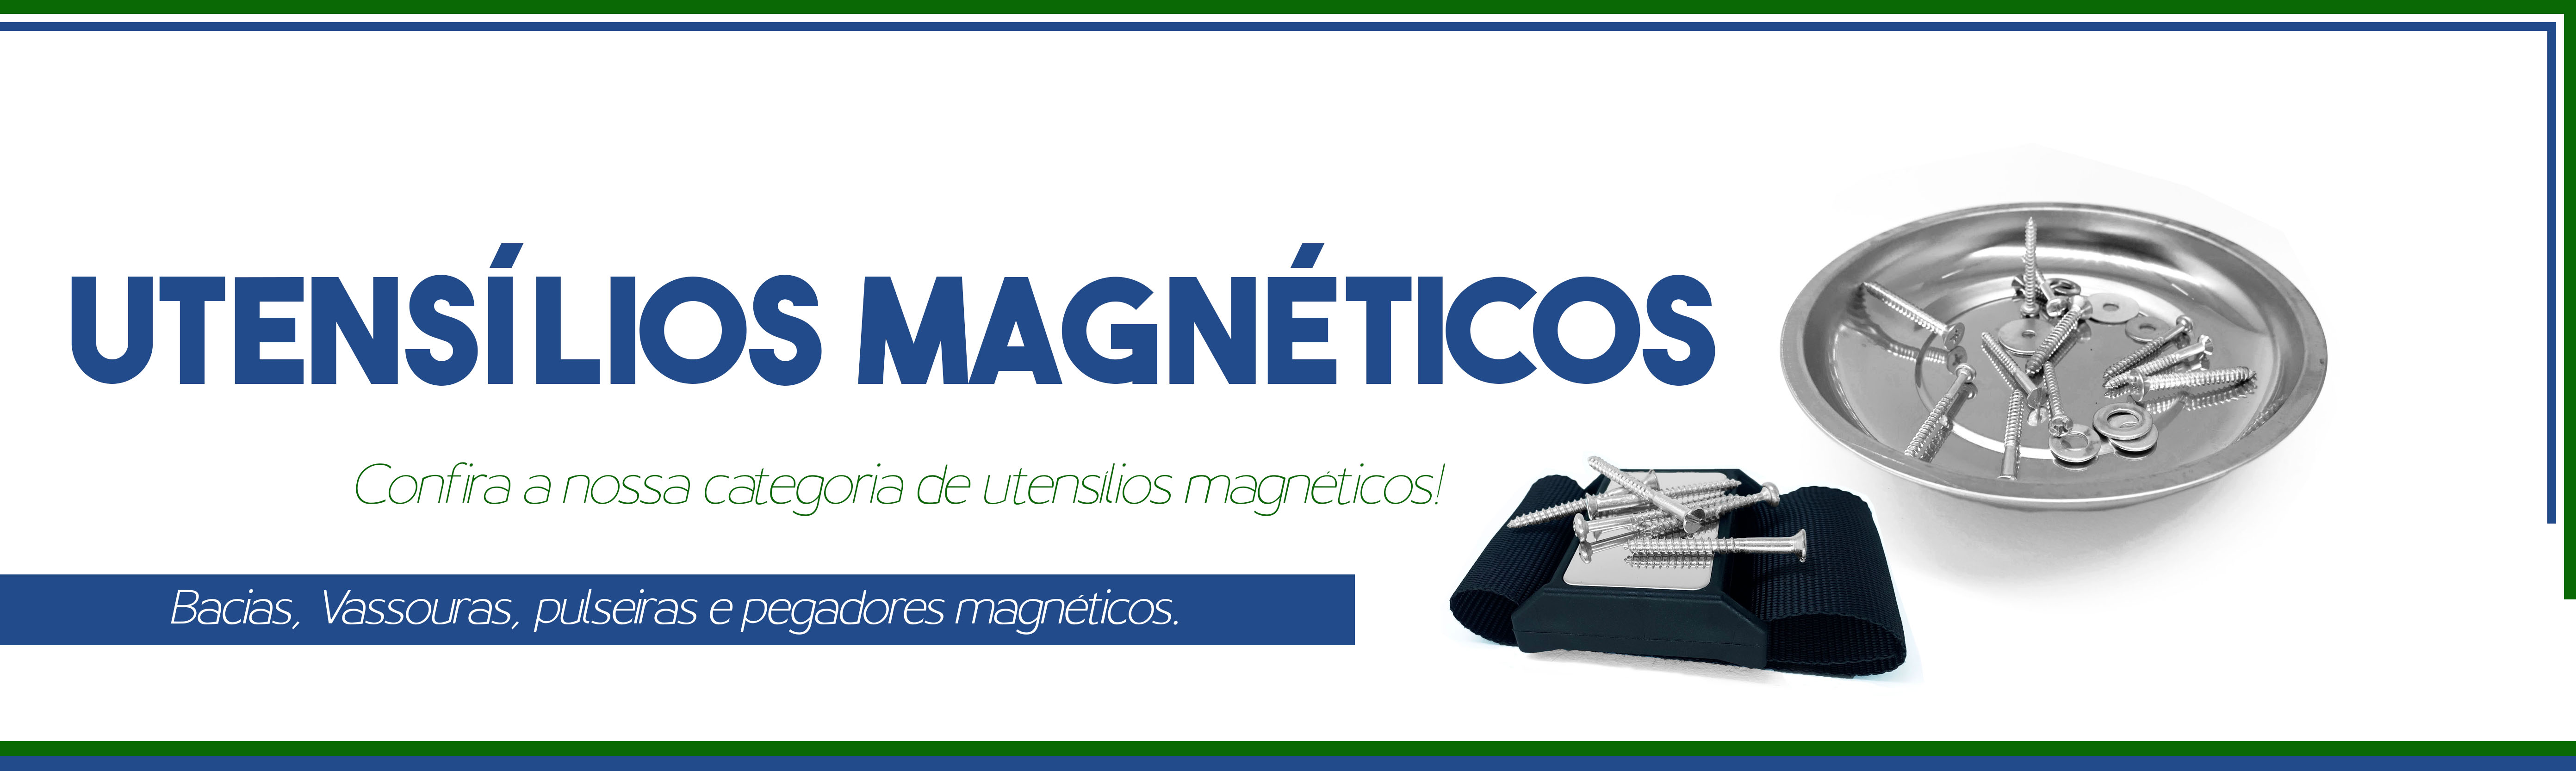 banner_utensiliosmagneticos